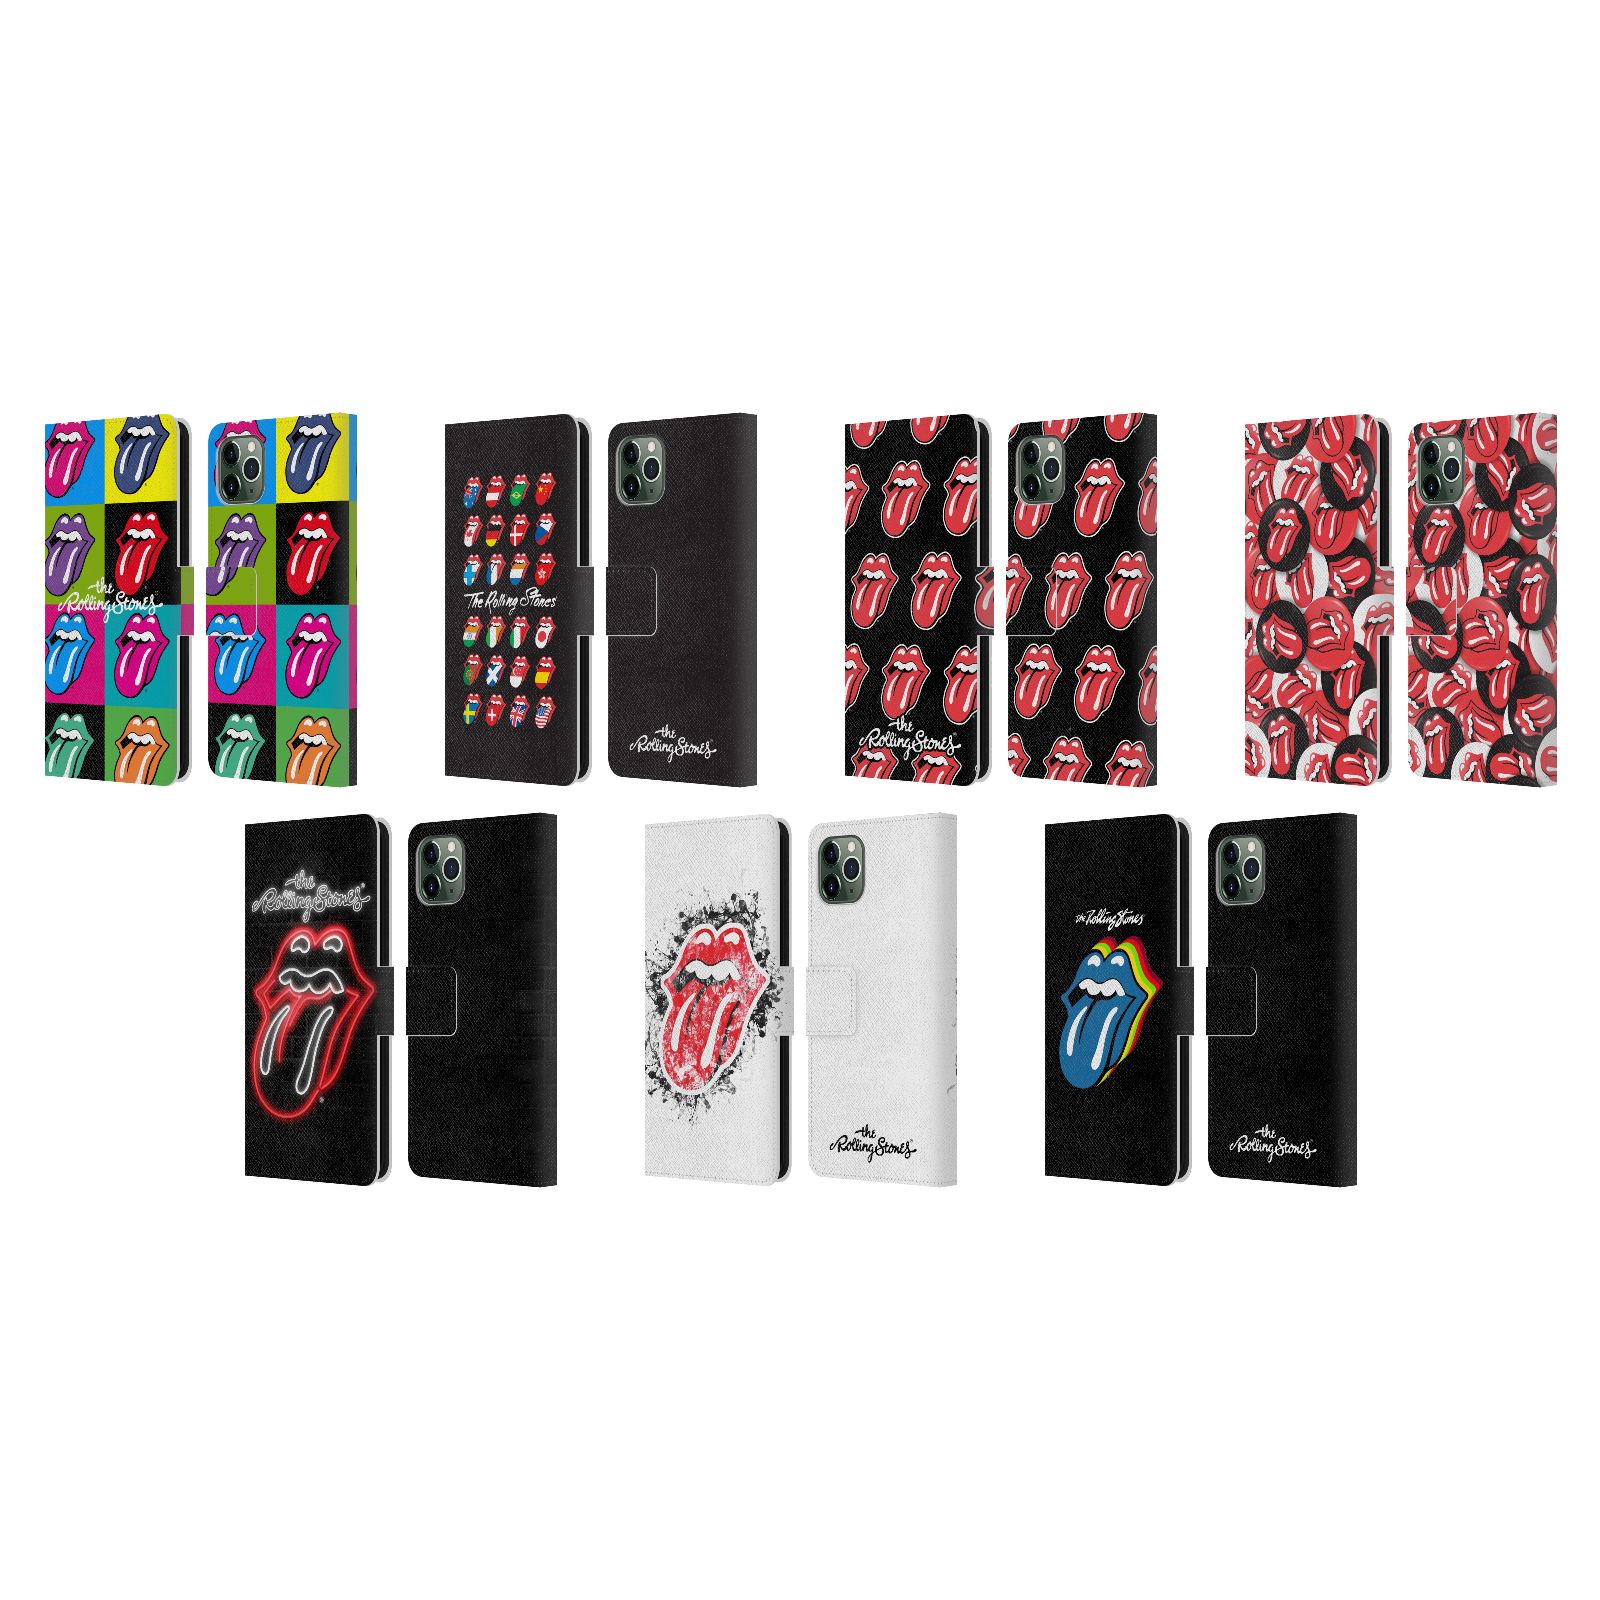 スマートフォン・携帯電話アクセサリー, ケース・カバー  The Rolling Stones Apple iPhone 